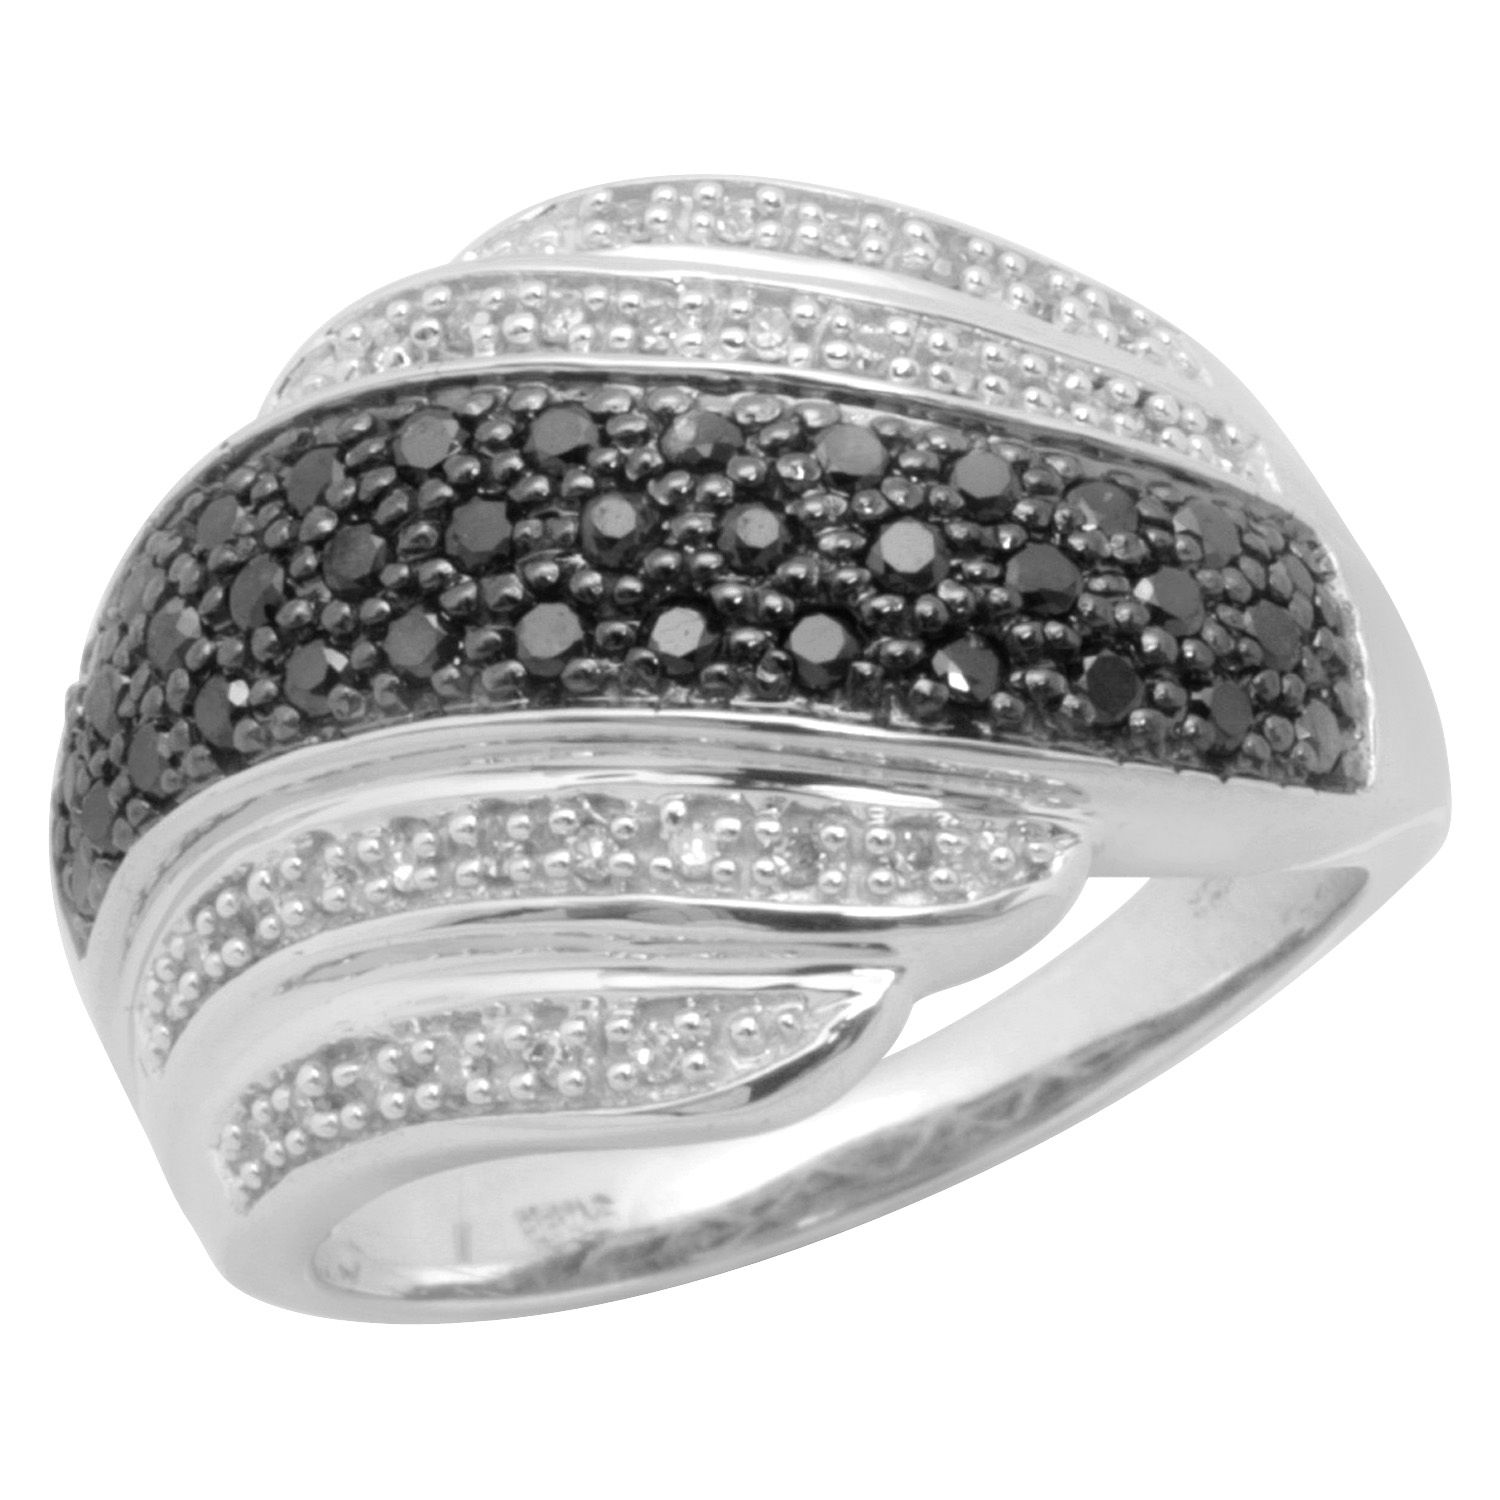 1/2 ct. tw.* Black and White Multi Row Fashion Ring. 10K White Gold